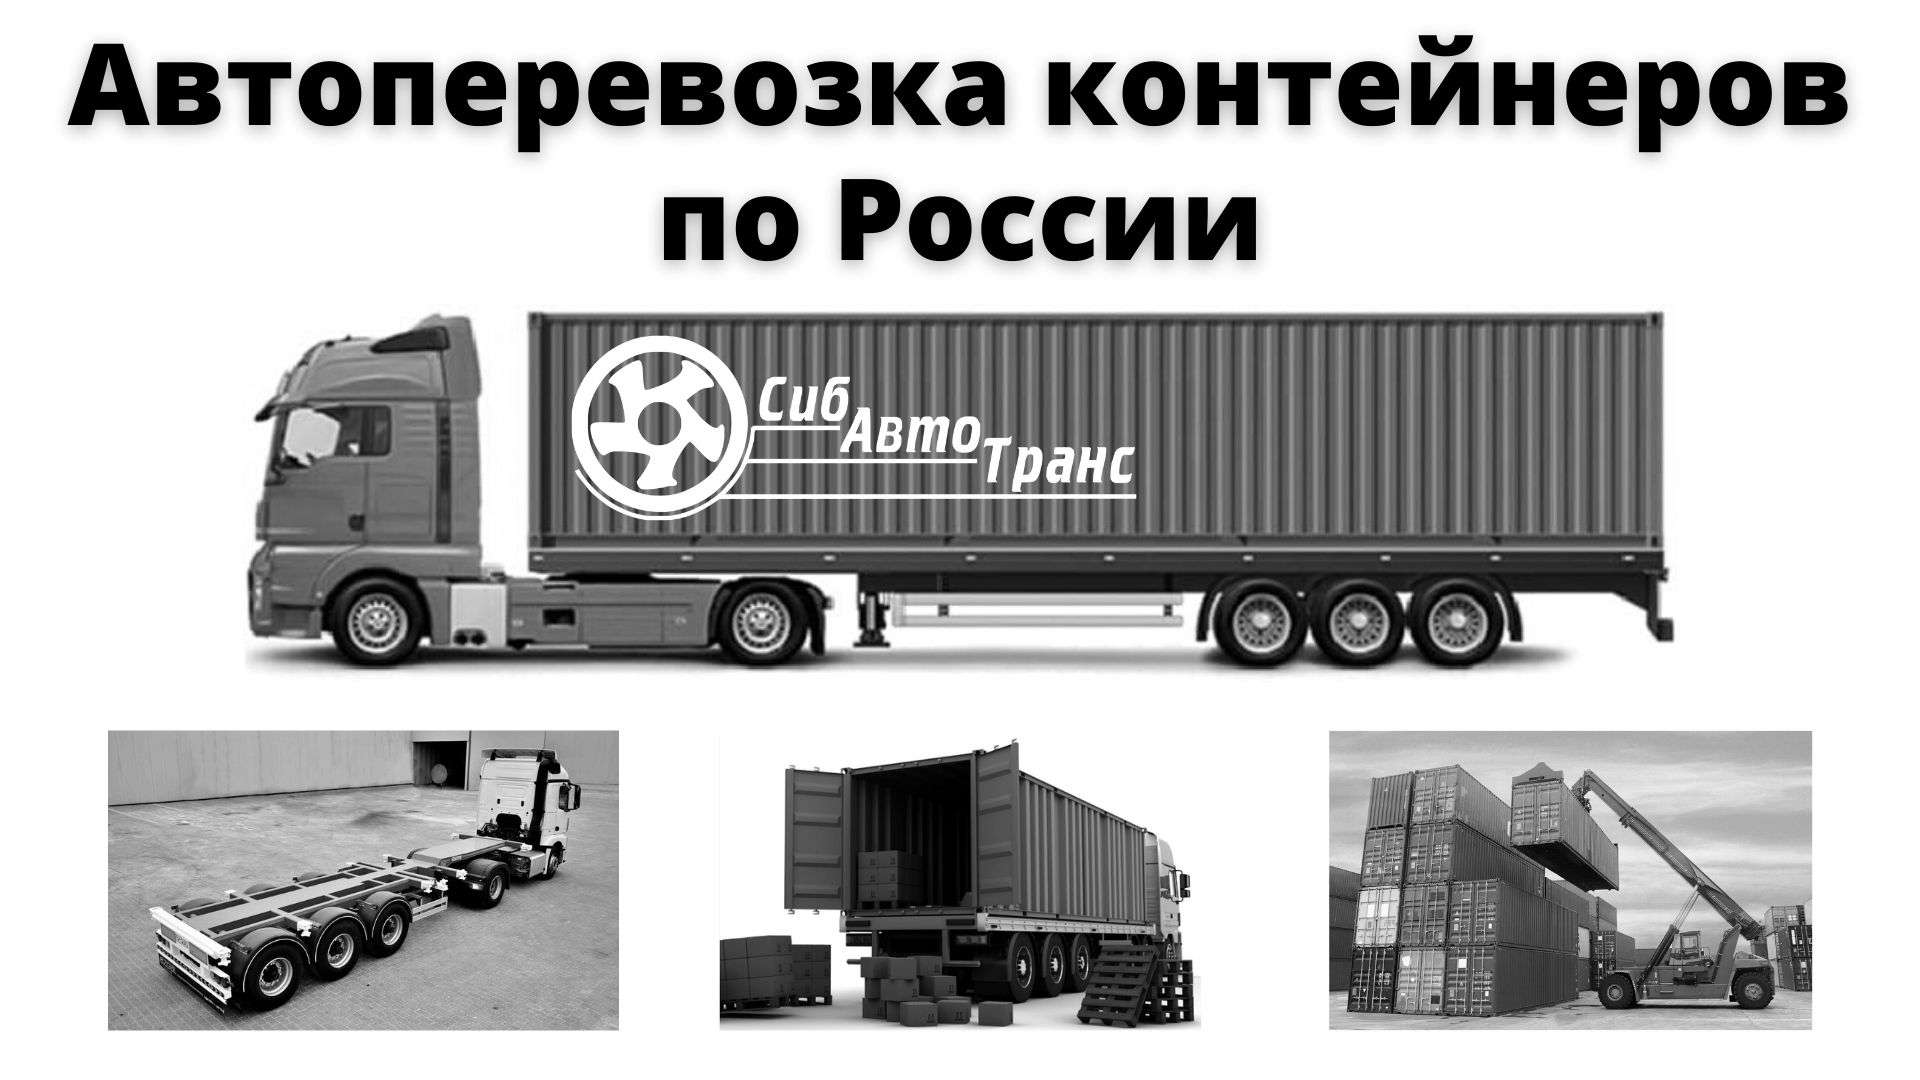 Avtoperevozka konteynerov po Rossii